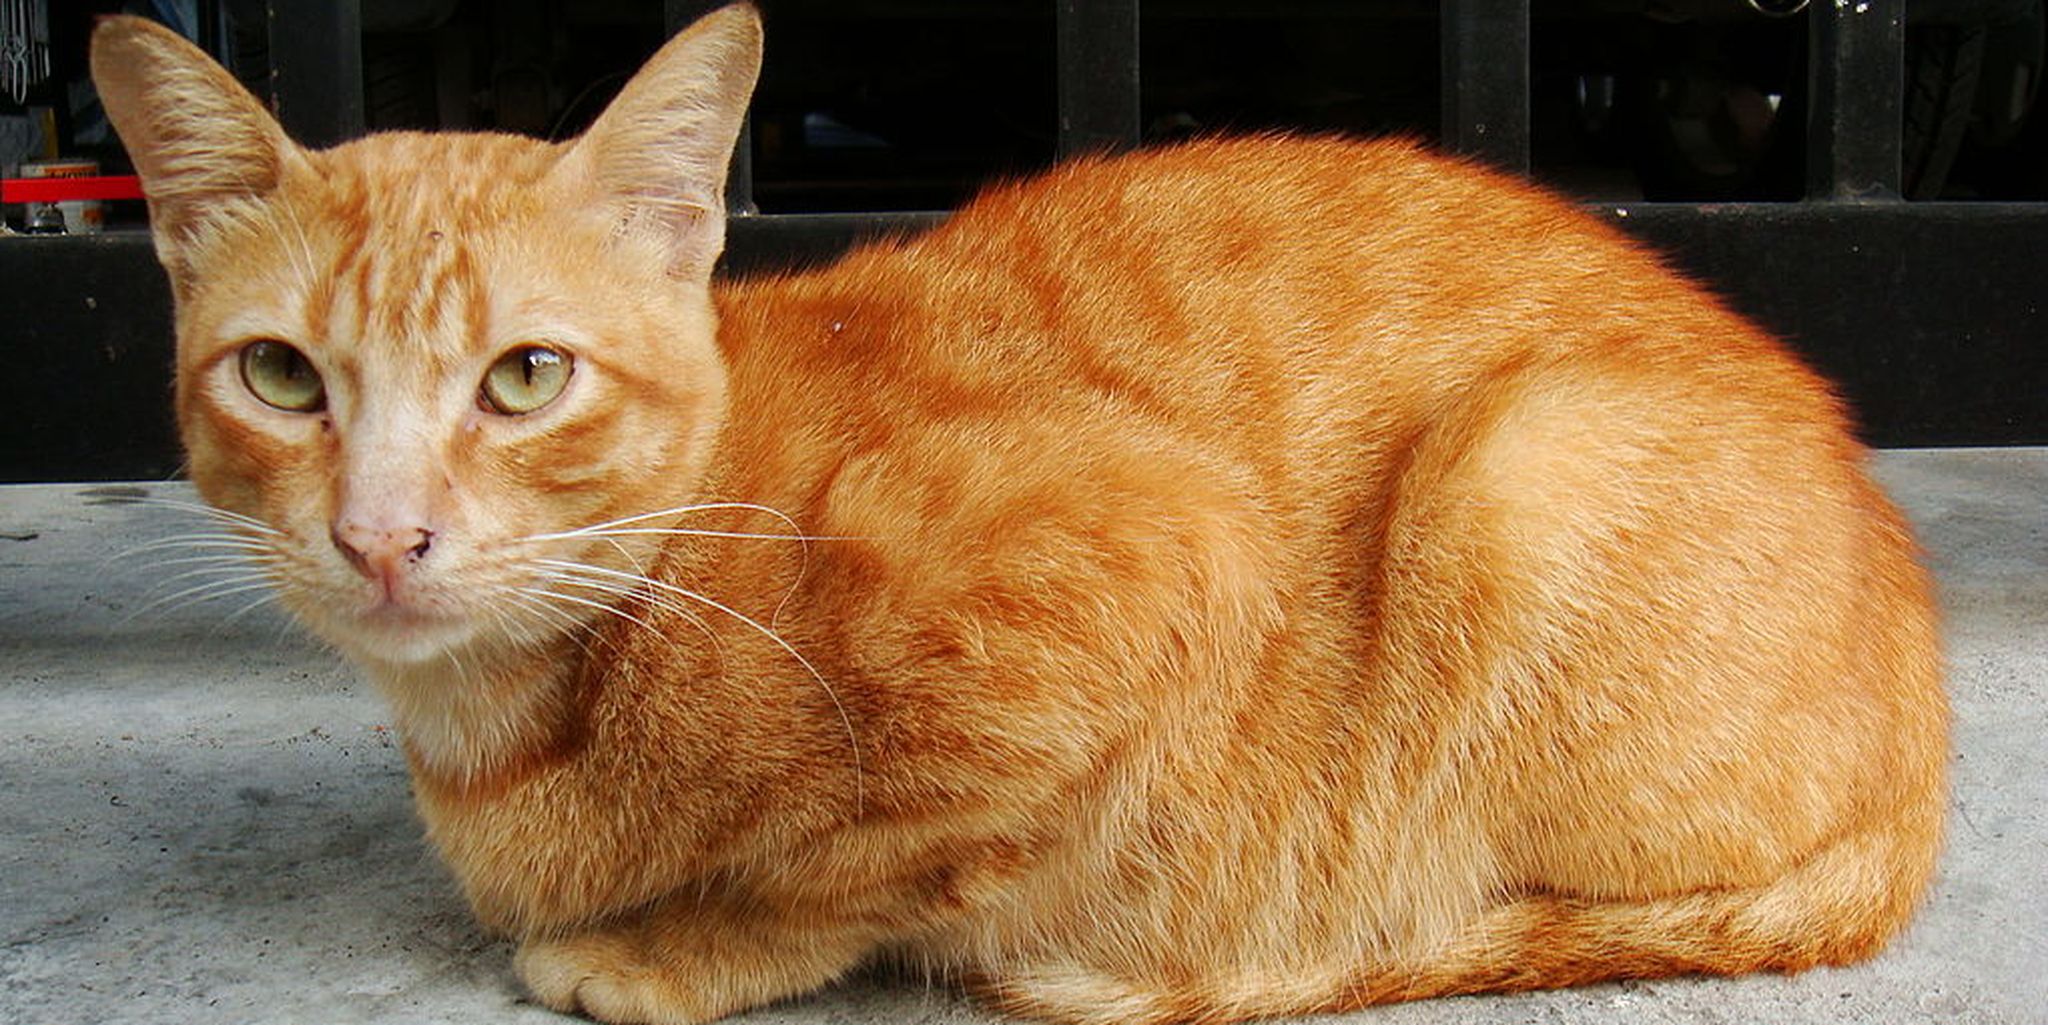 Рыжие породы кошек с фотографиями. Европейская короткошерстная табби рыжий. Цейлонская короткошерстная кошка рыжая. Ginger tabby Cat порода. Бразильская короткошерстная кошка рыжая цейлонская.